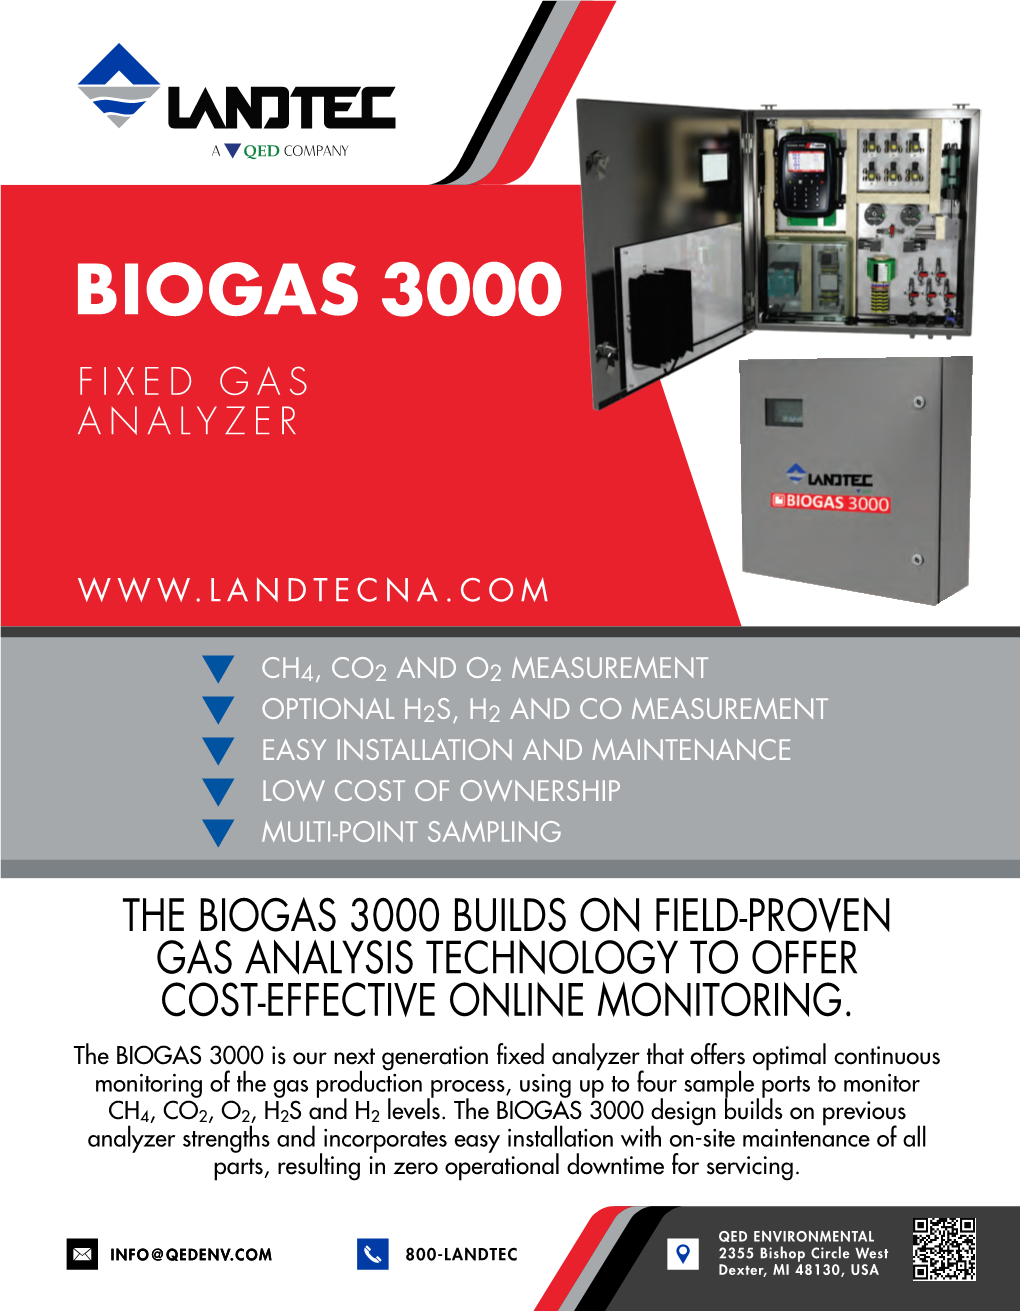 Biogas 3000 Fixed Gas Analyzer